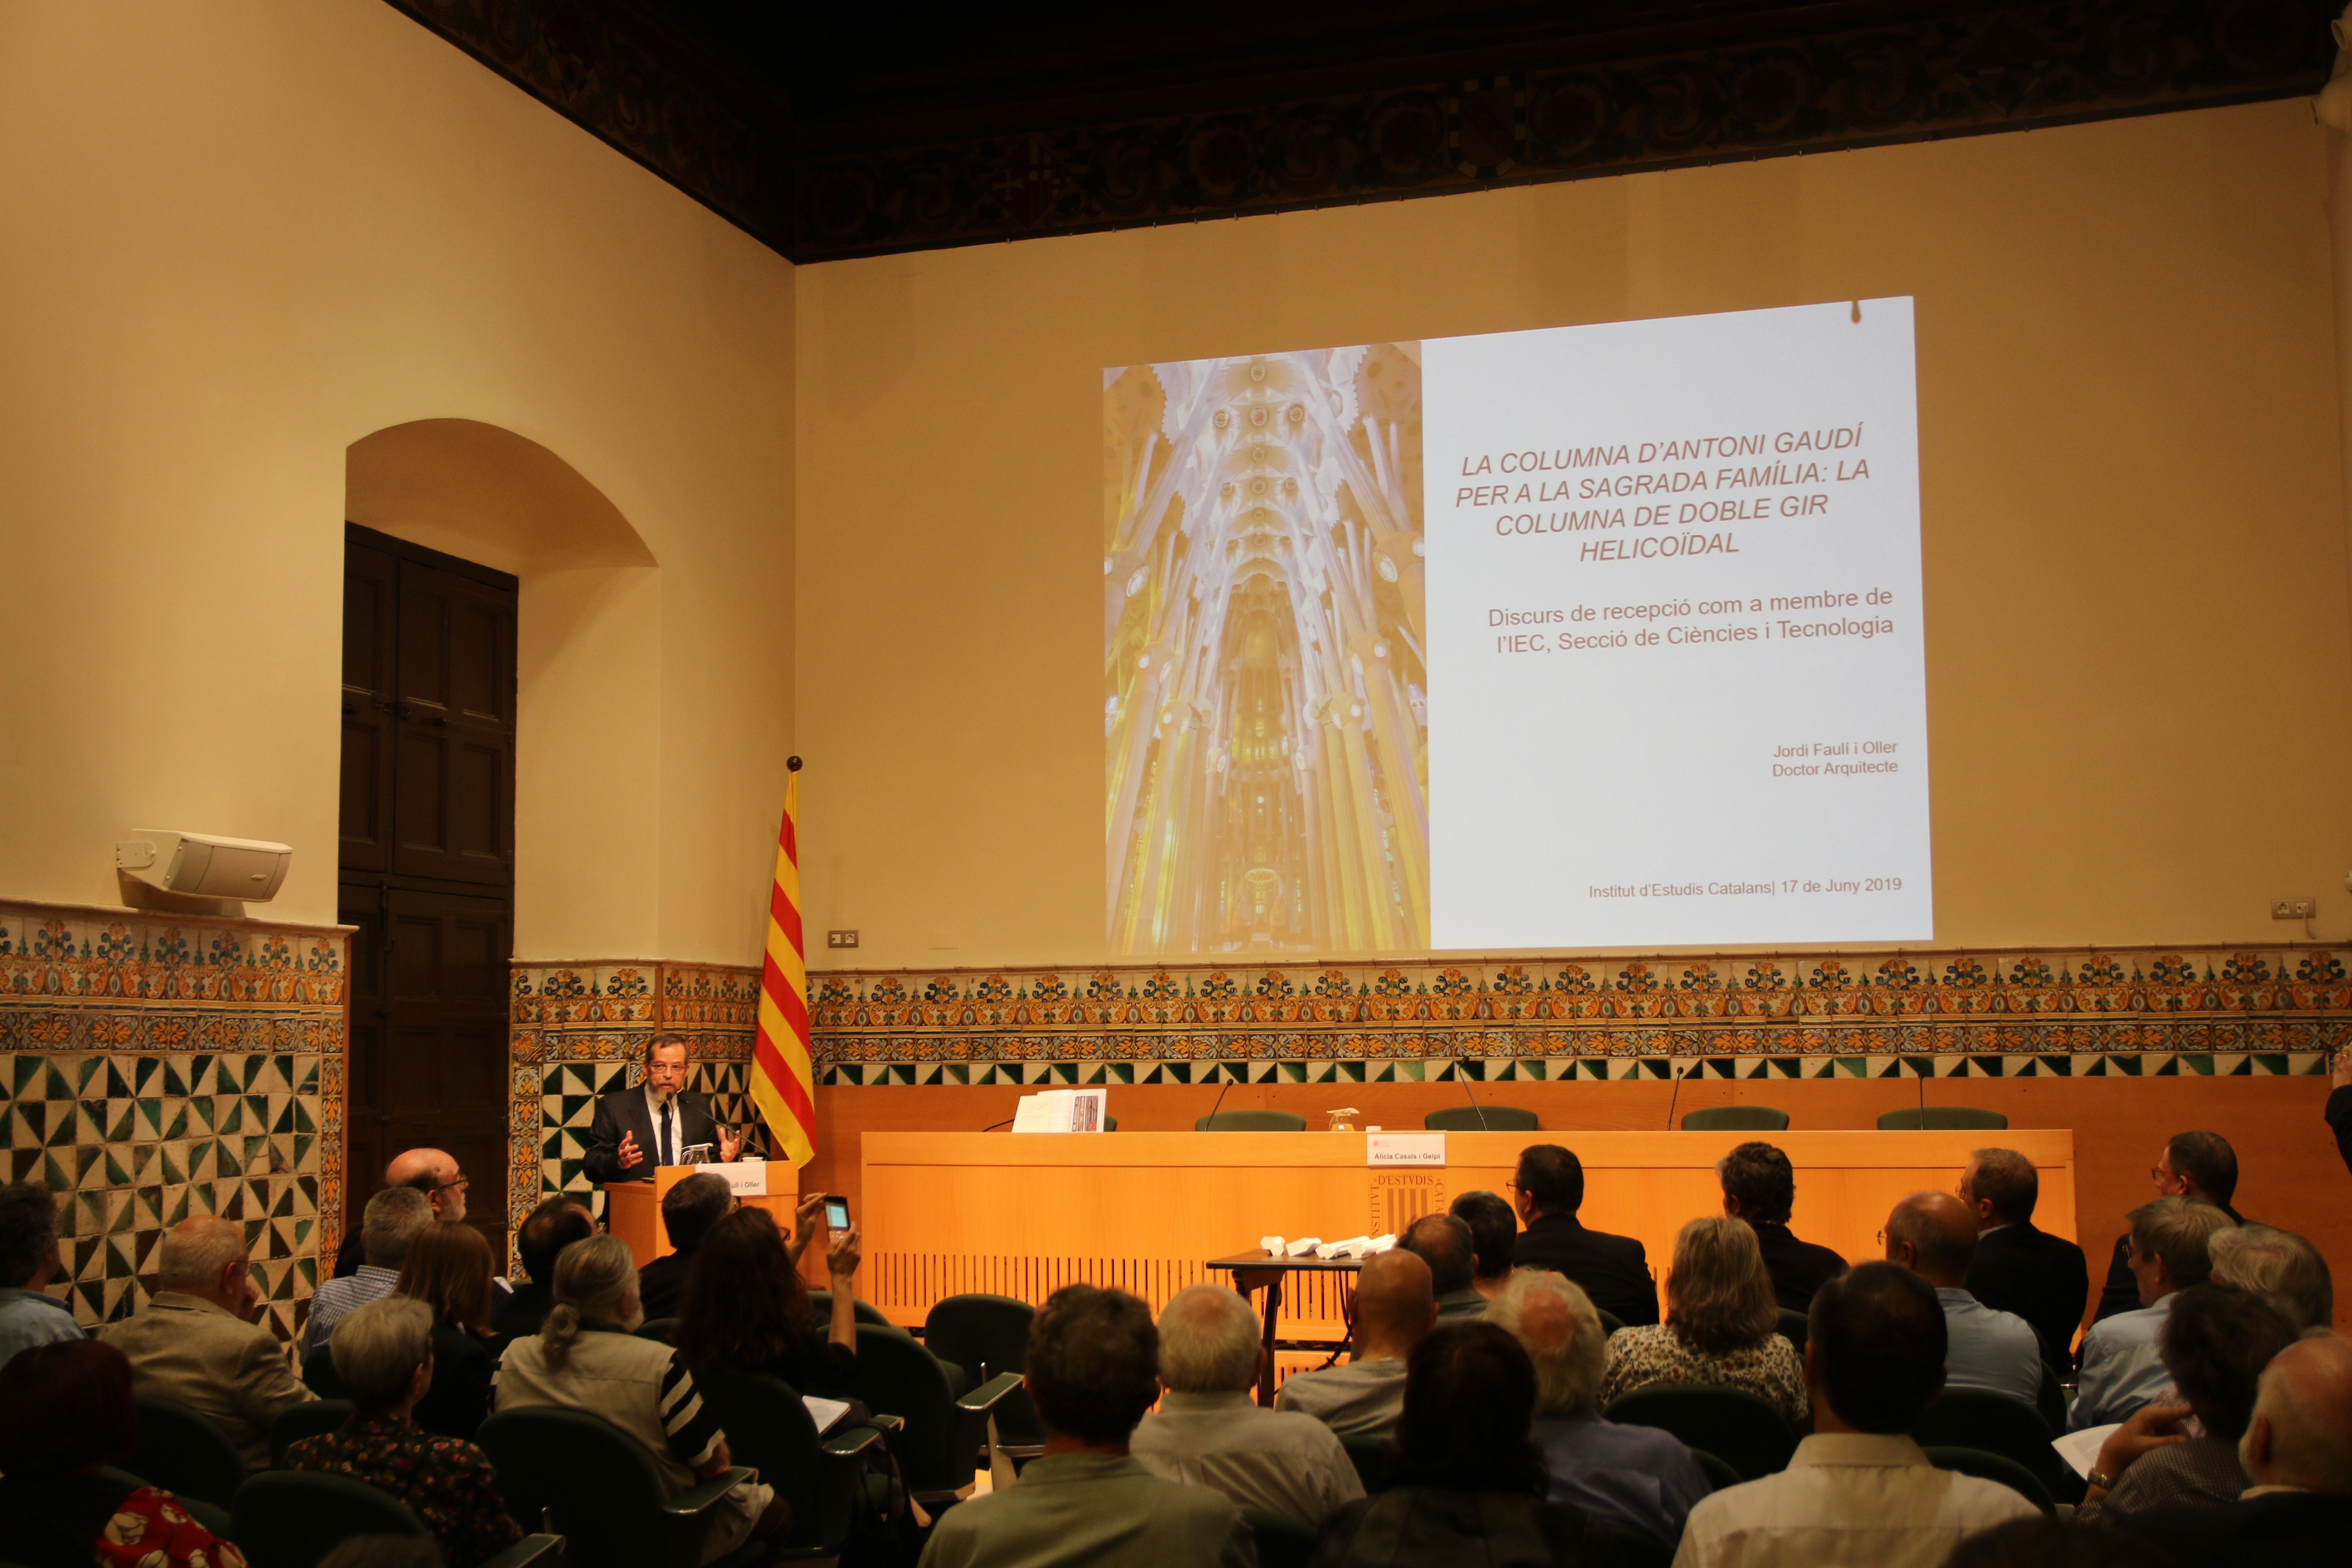 Jordi Faulí gives speech accepting nomination as a permanent member of Institut d’Estudis Catalans